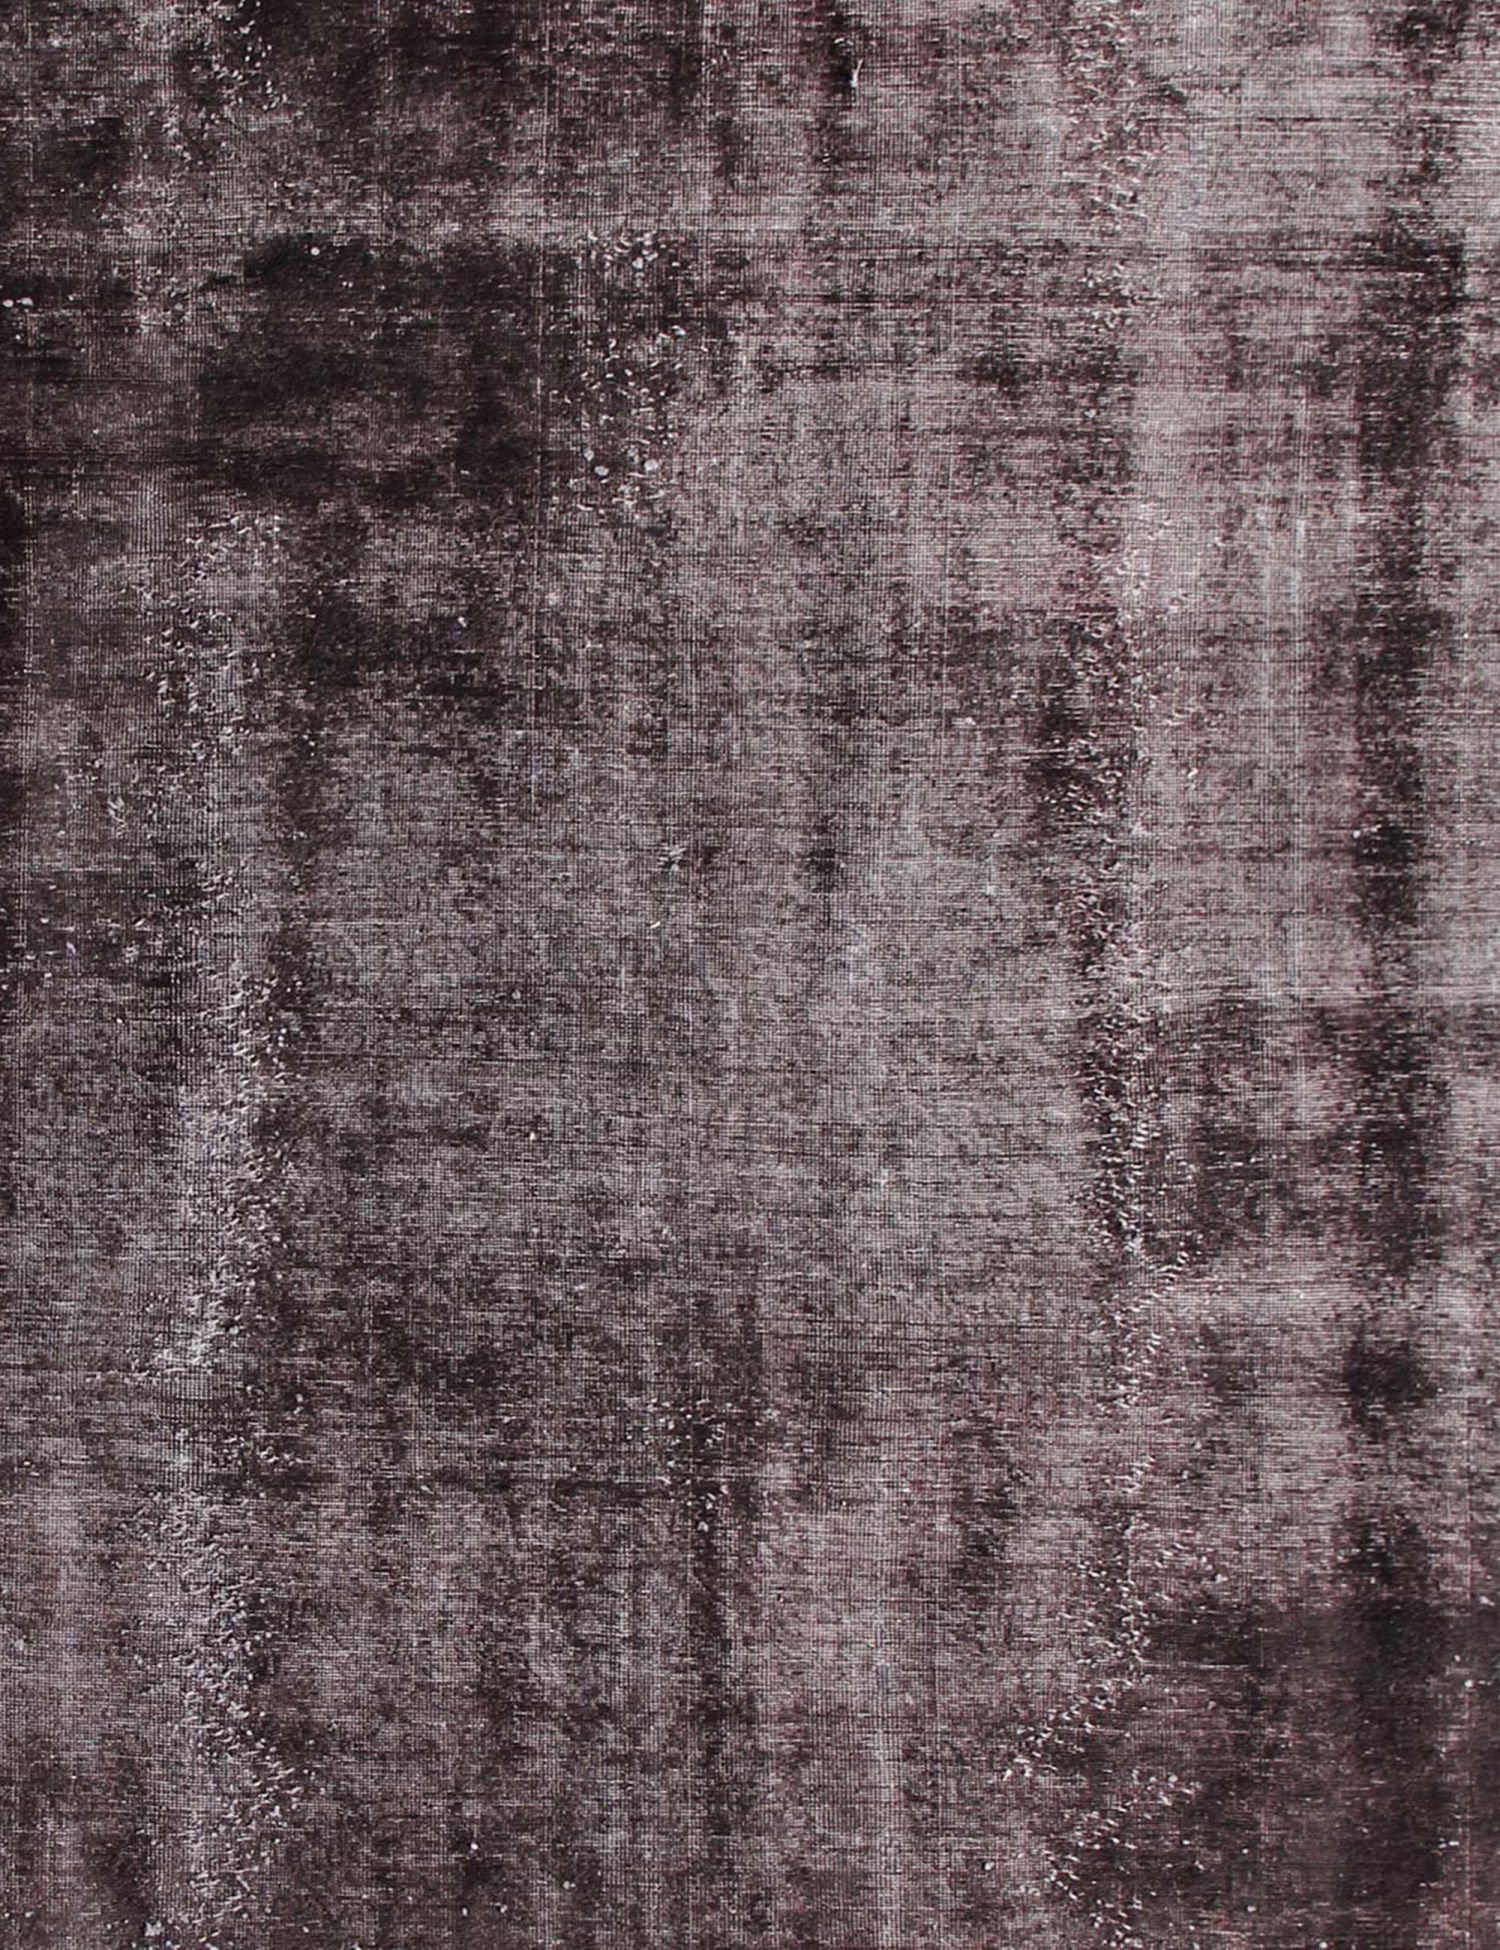 Persischer Vintage Teppich  schwarz <br/>250 x 210 cm